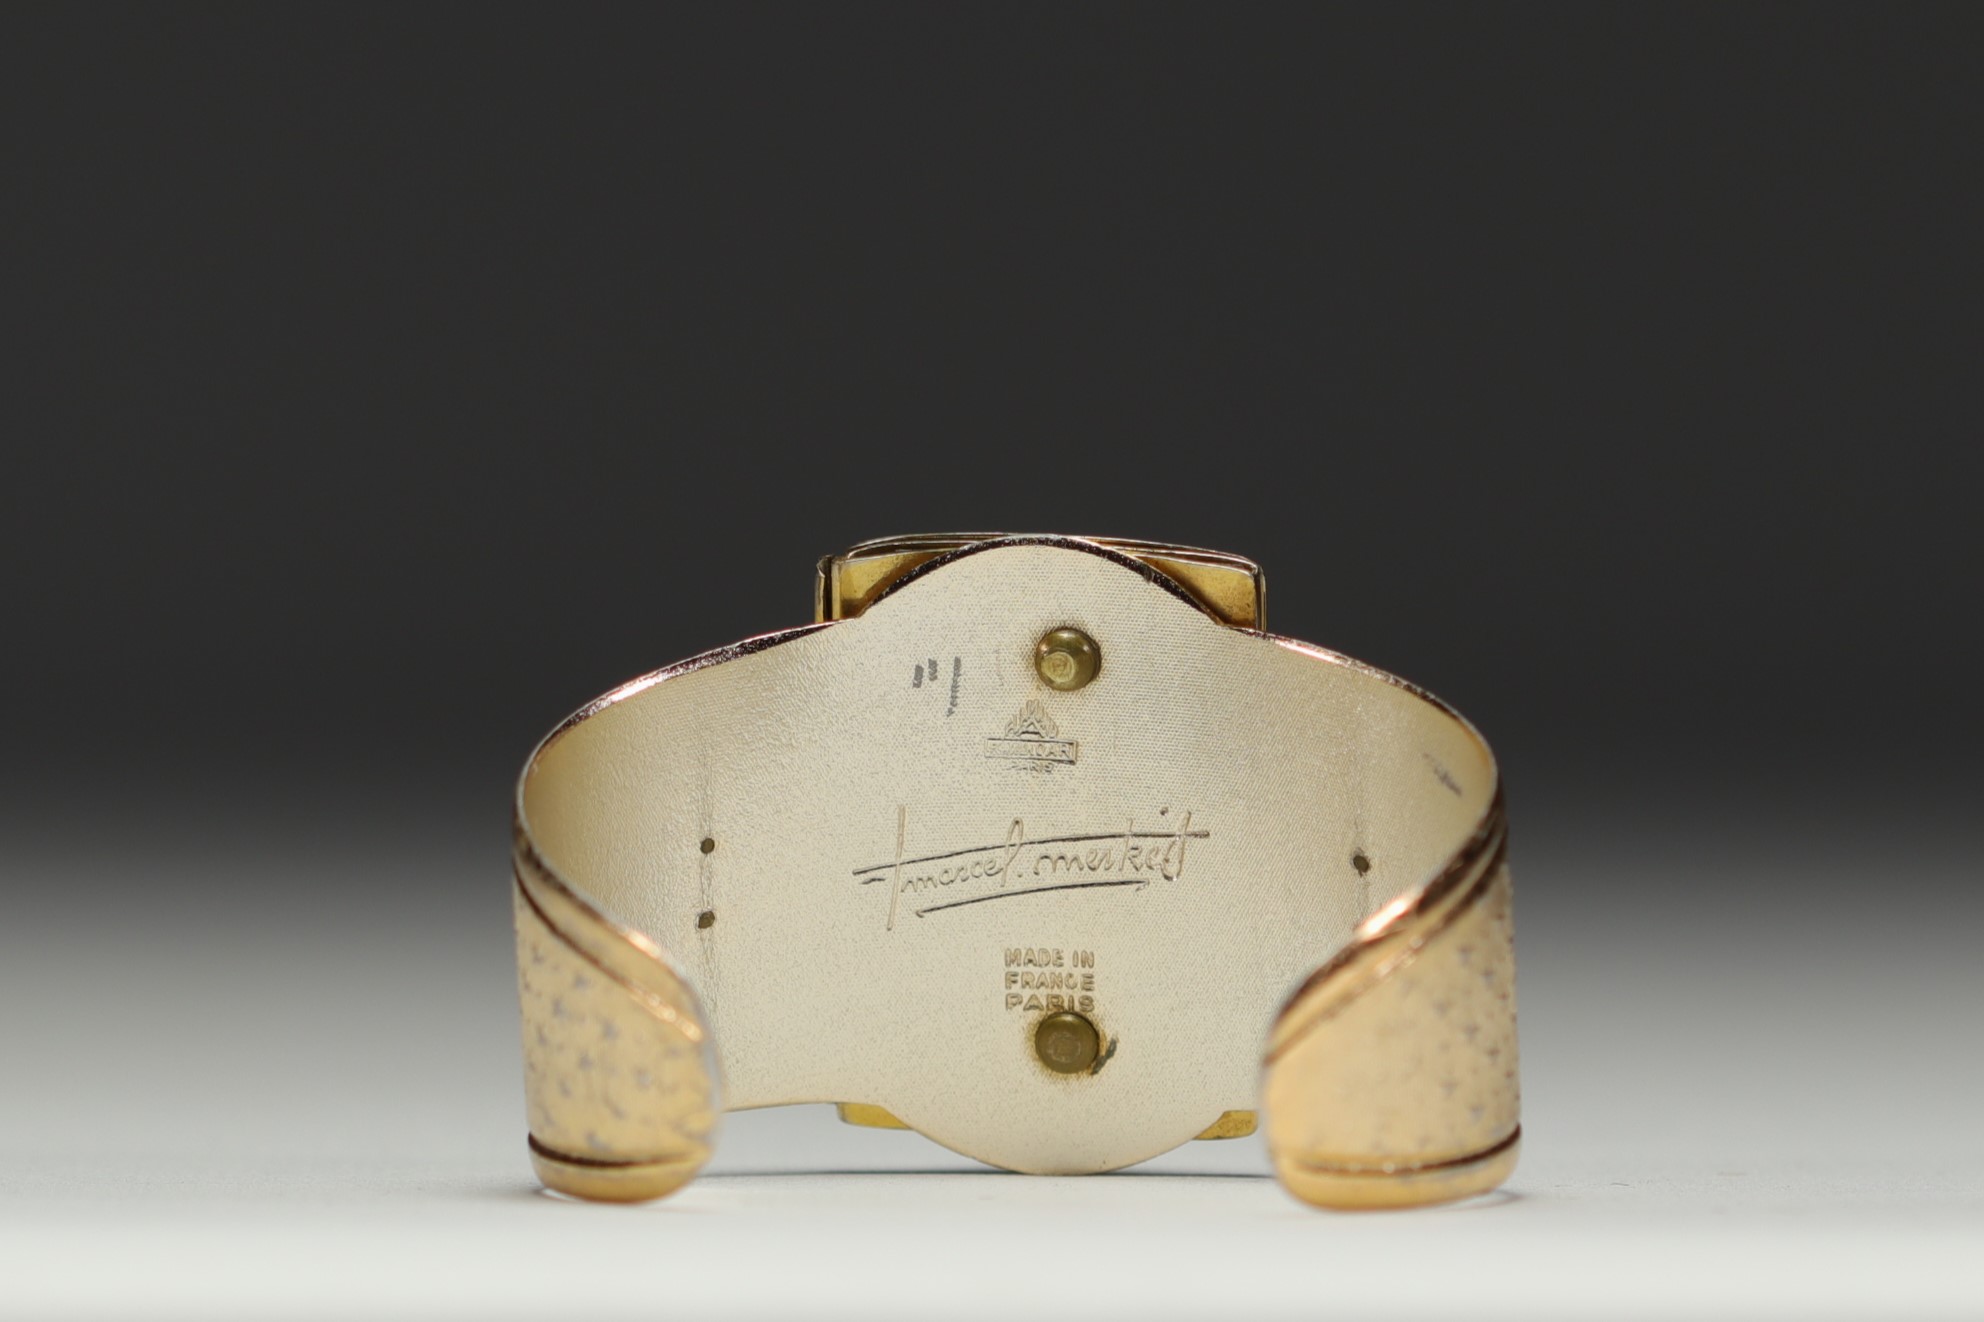 Albert Flamand Paris - "Marcel Merkes" cuff bracelet in Fladium, circa 1930-40. - Image 3 of 4